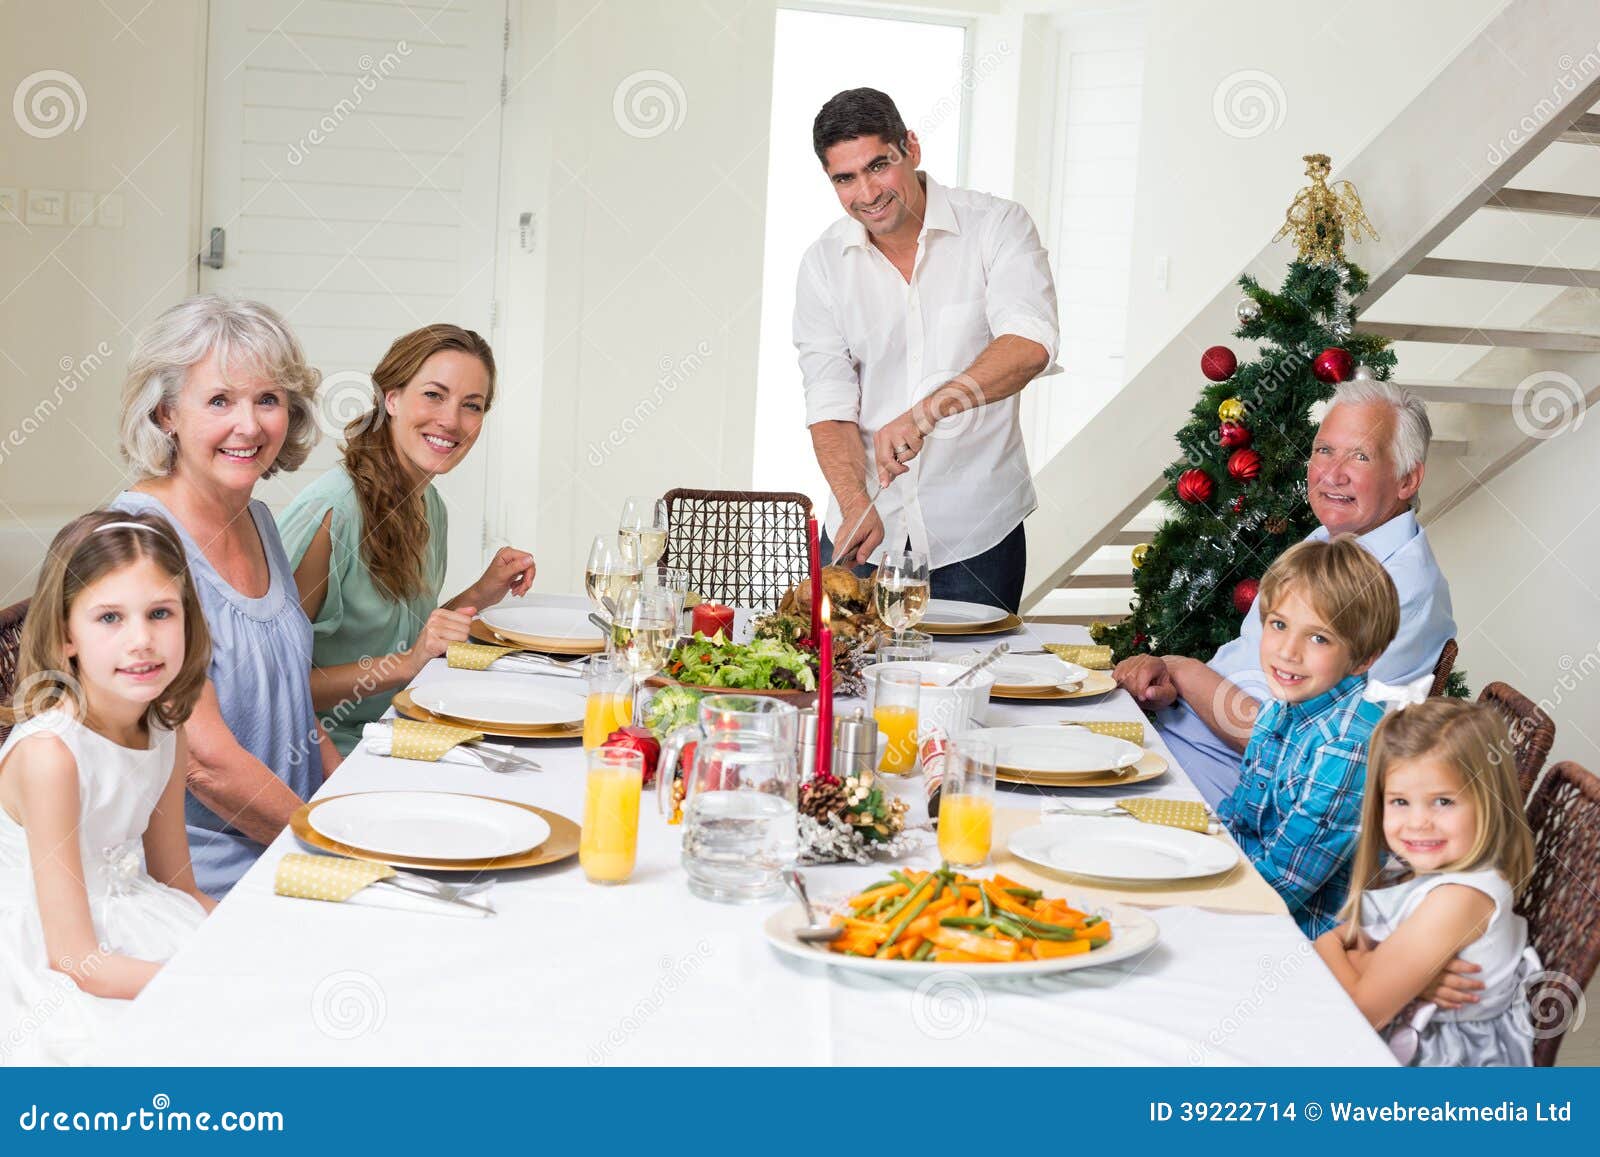 Pasti Di Natale.Famiglia Che Ha Pasto Di Natale Al Tavolo Da Pranzo Fotografia Stock Immagine Di Caucasico Uomo 39222714